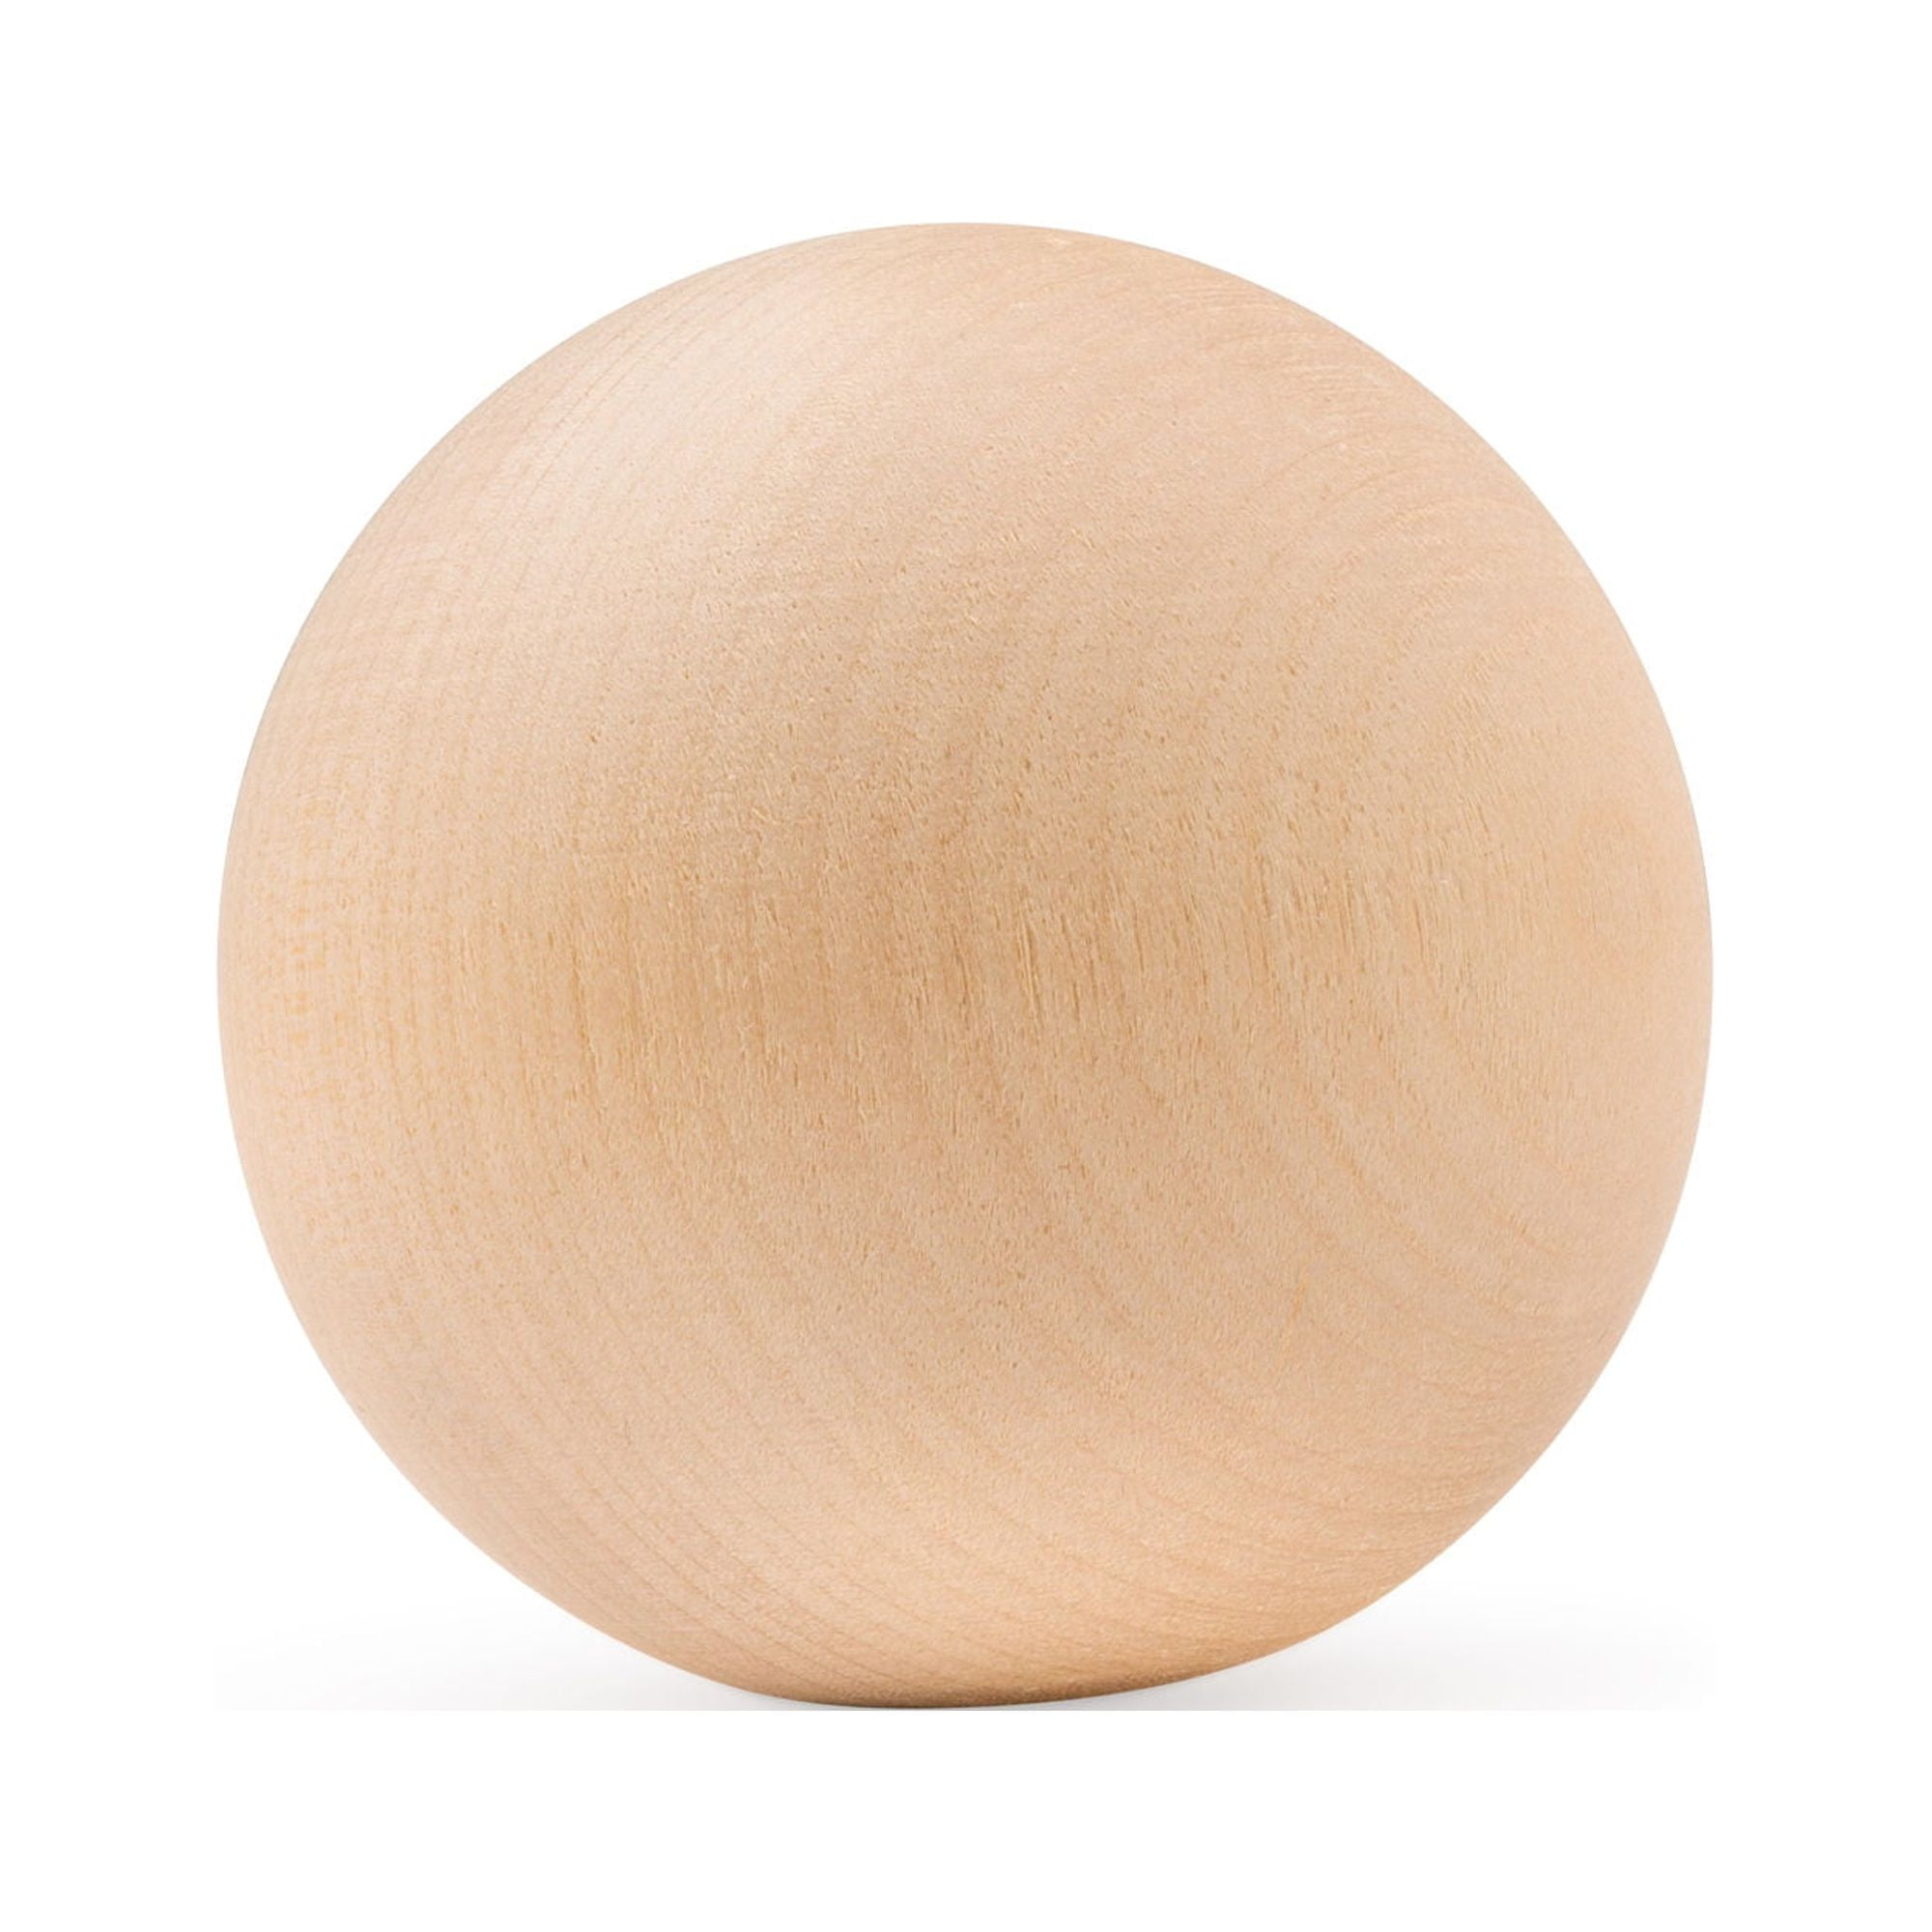 3/4 inch Wooden Balls